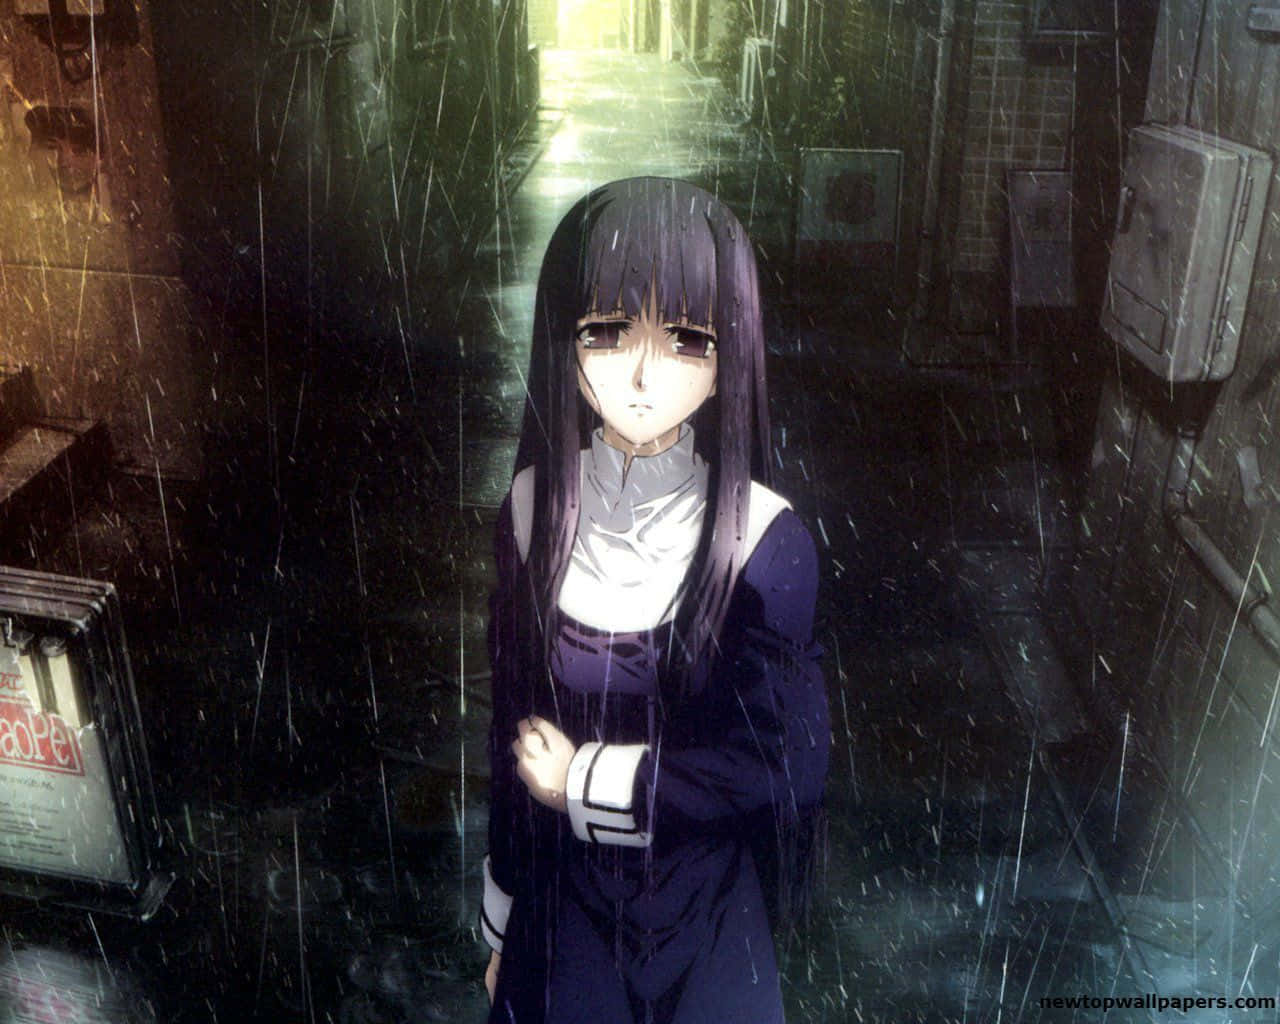 I en verden af ​sorg står en anime-karakter alene. Wallpaper